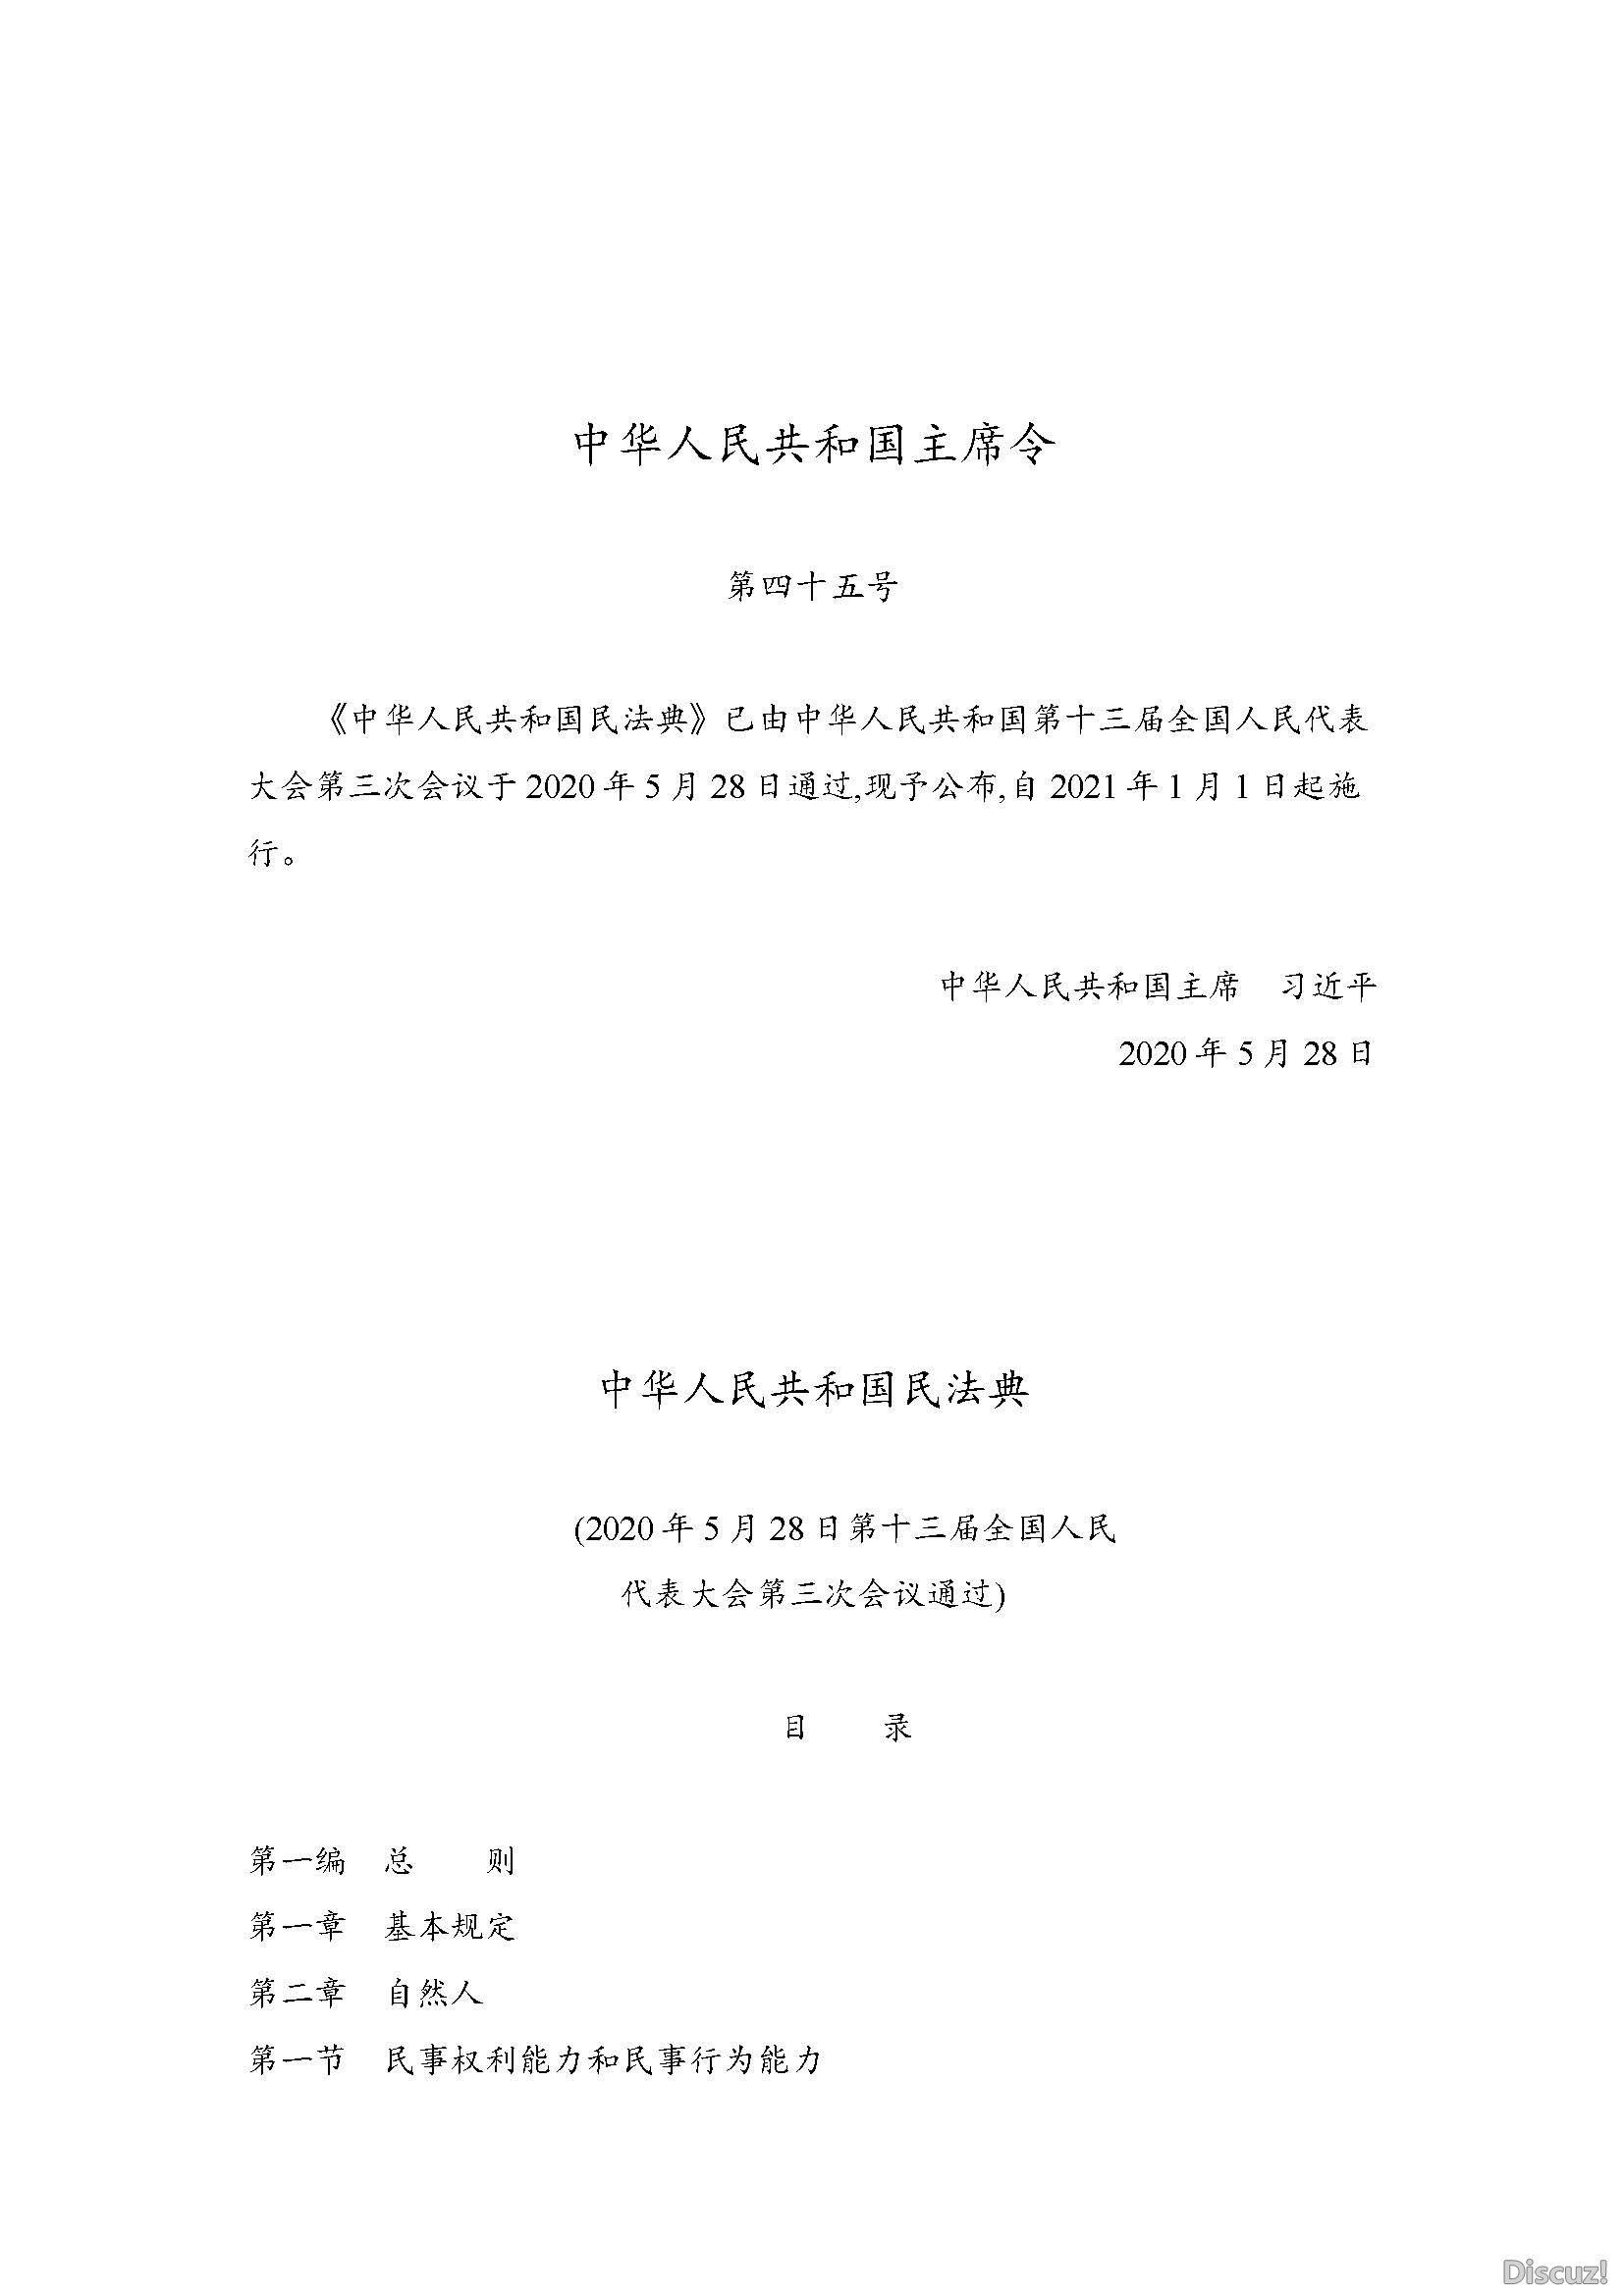 中华人民共和国民法典2020_页面_001.jpg